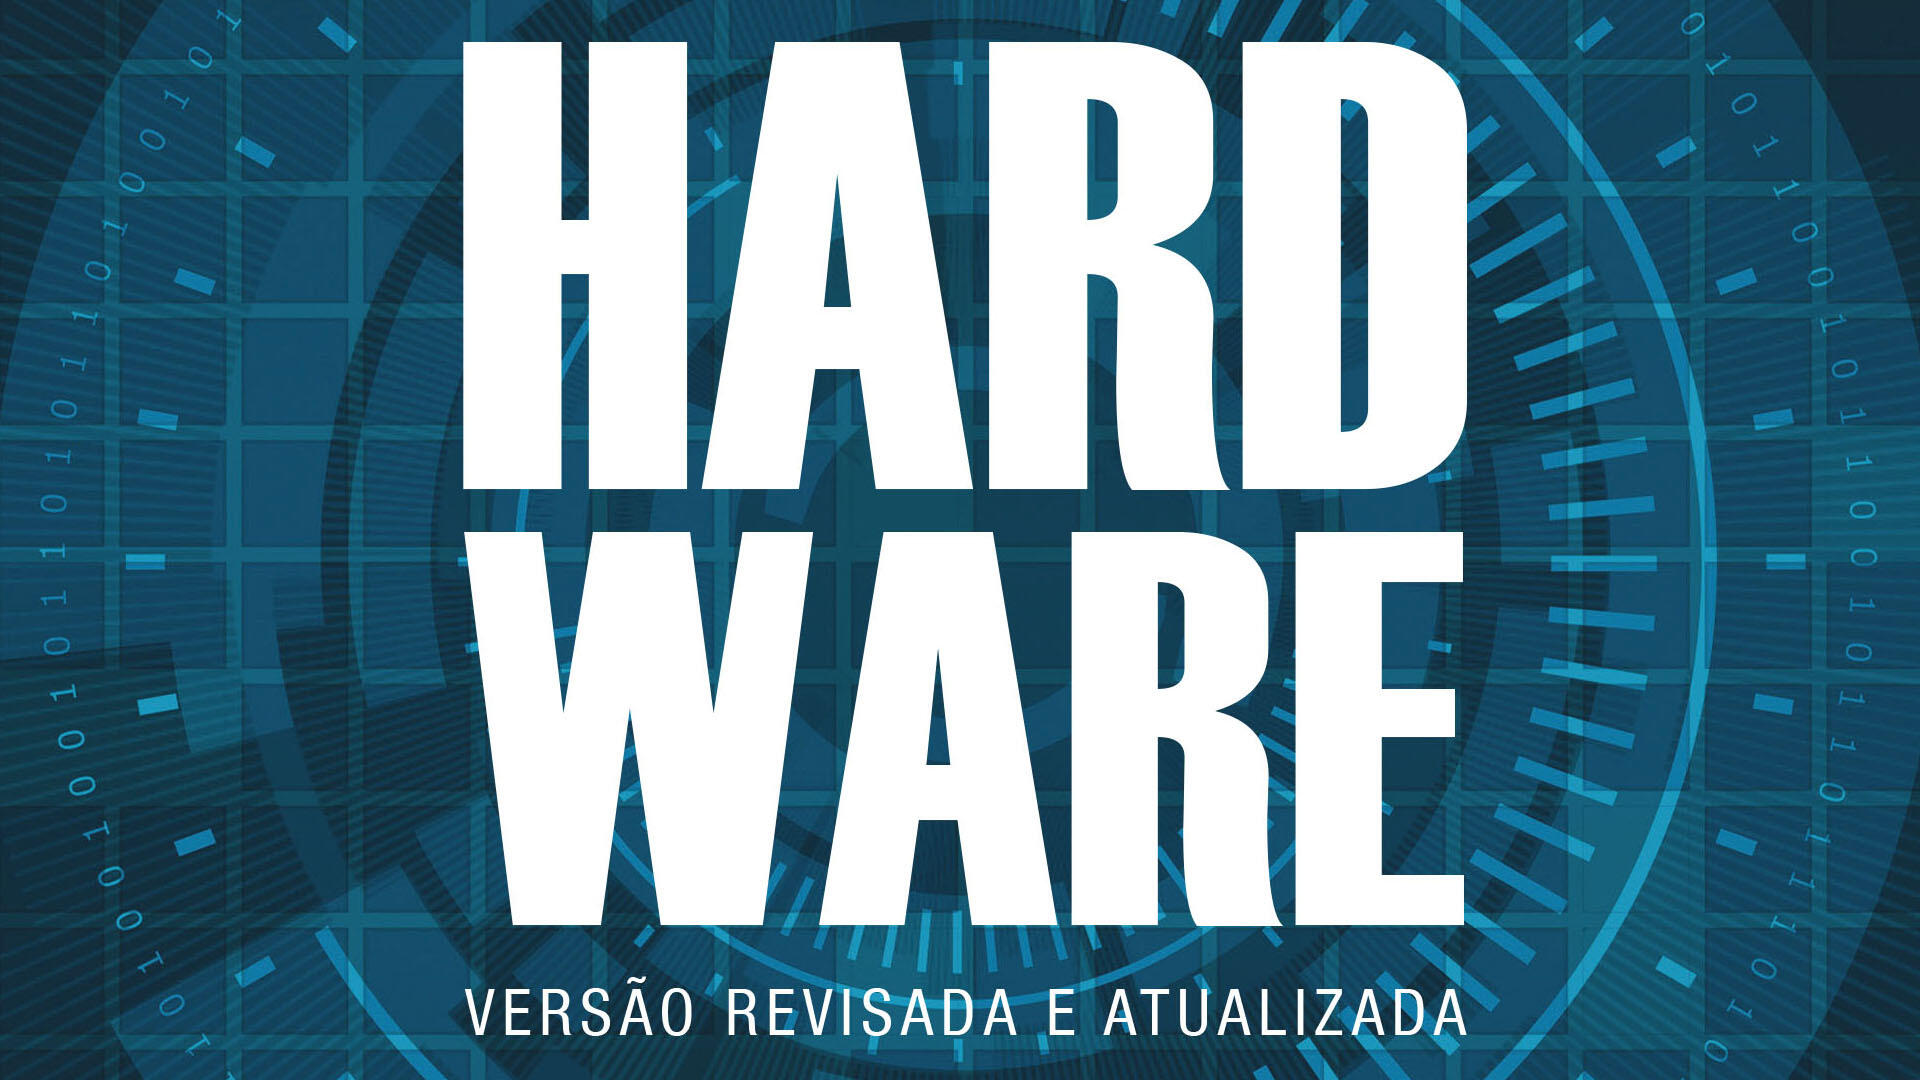 Gabriel Torres lança a nova edição do seu livro de referência Hardware